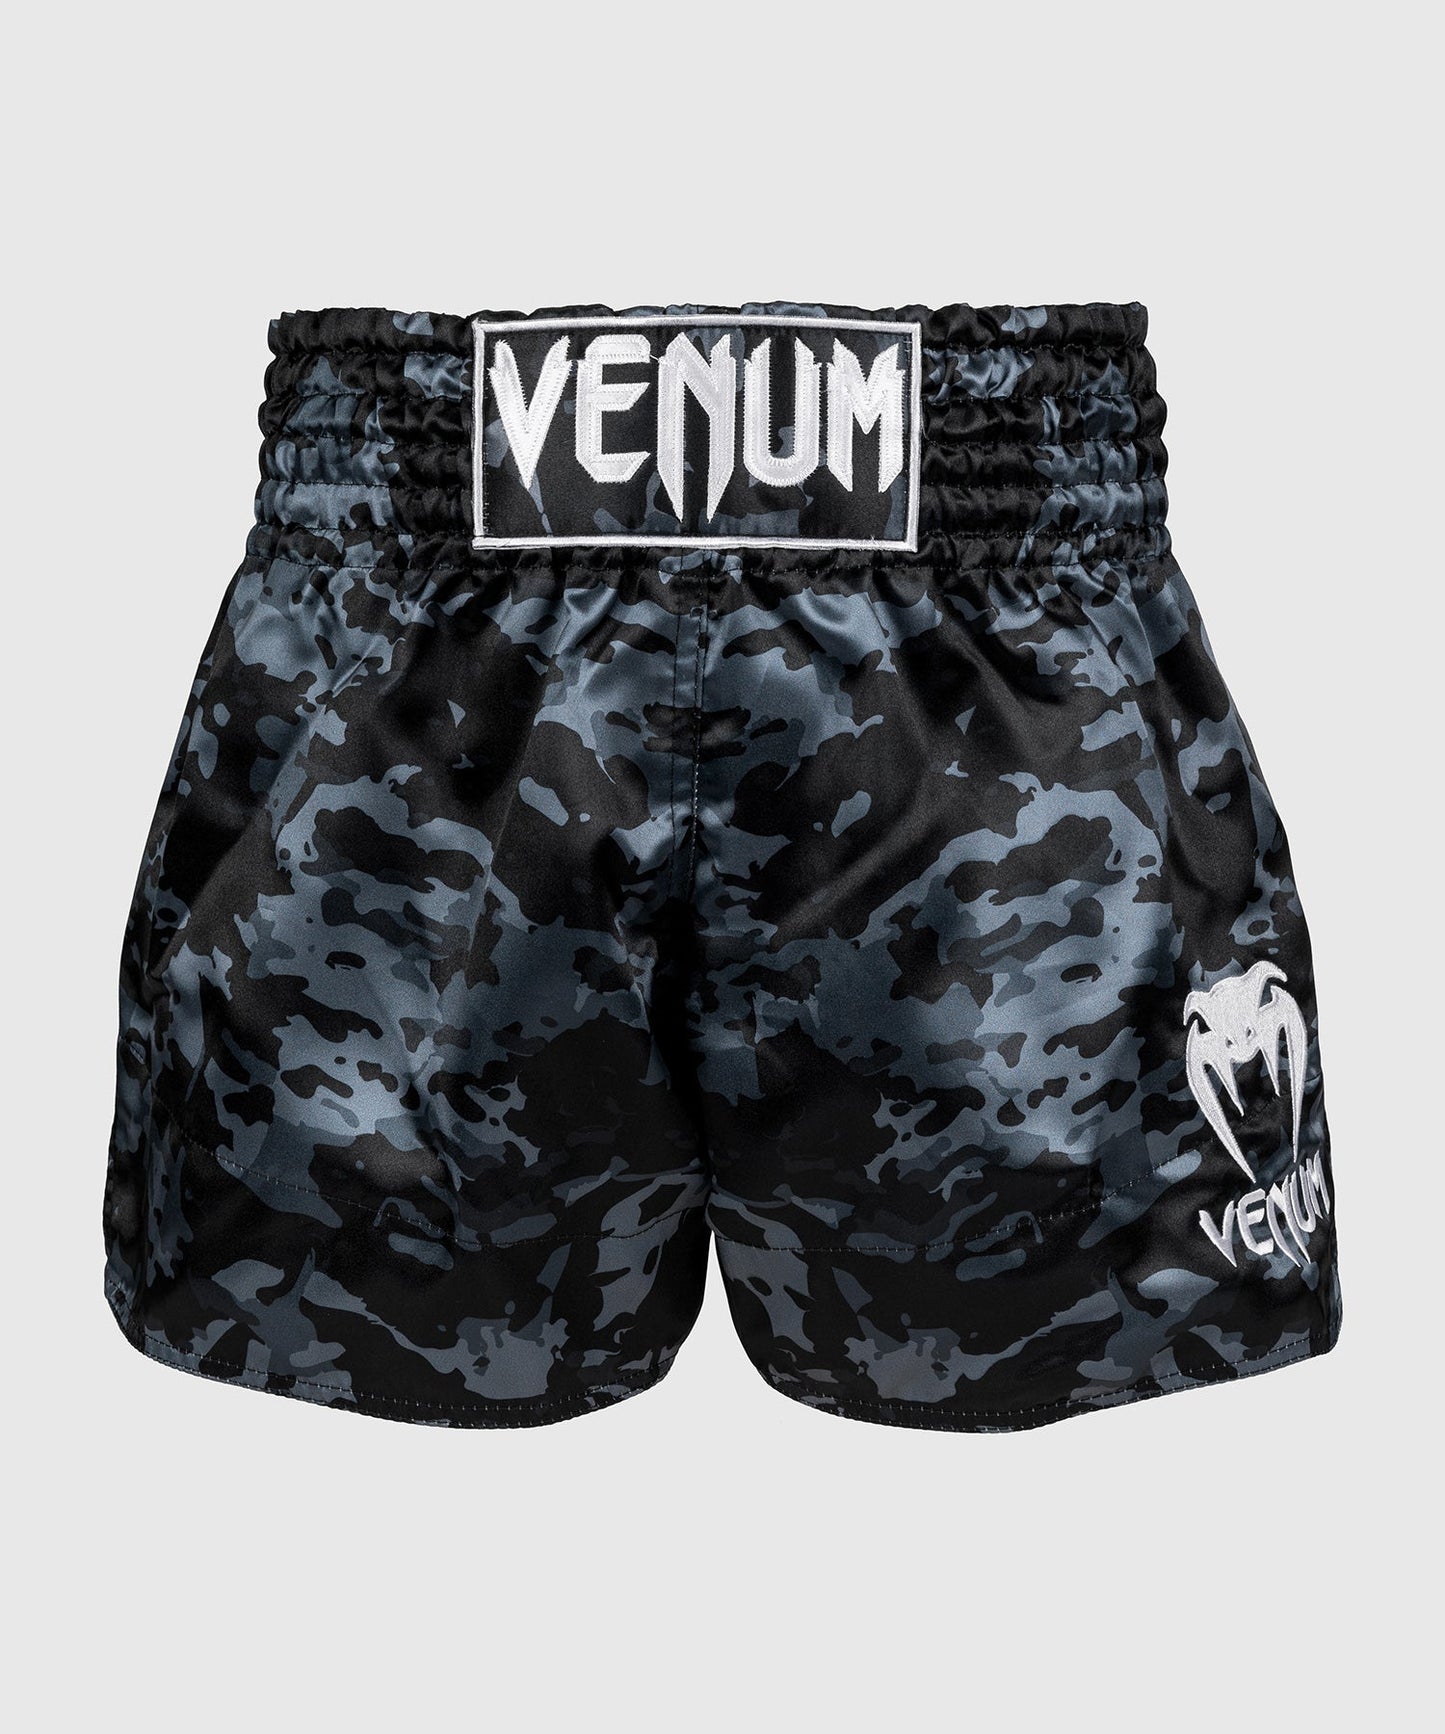 Venum Classic Pantalones cortos de Muay Thai - Dark Camo